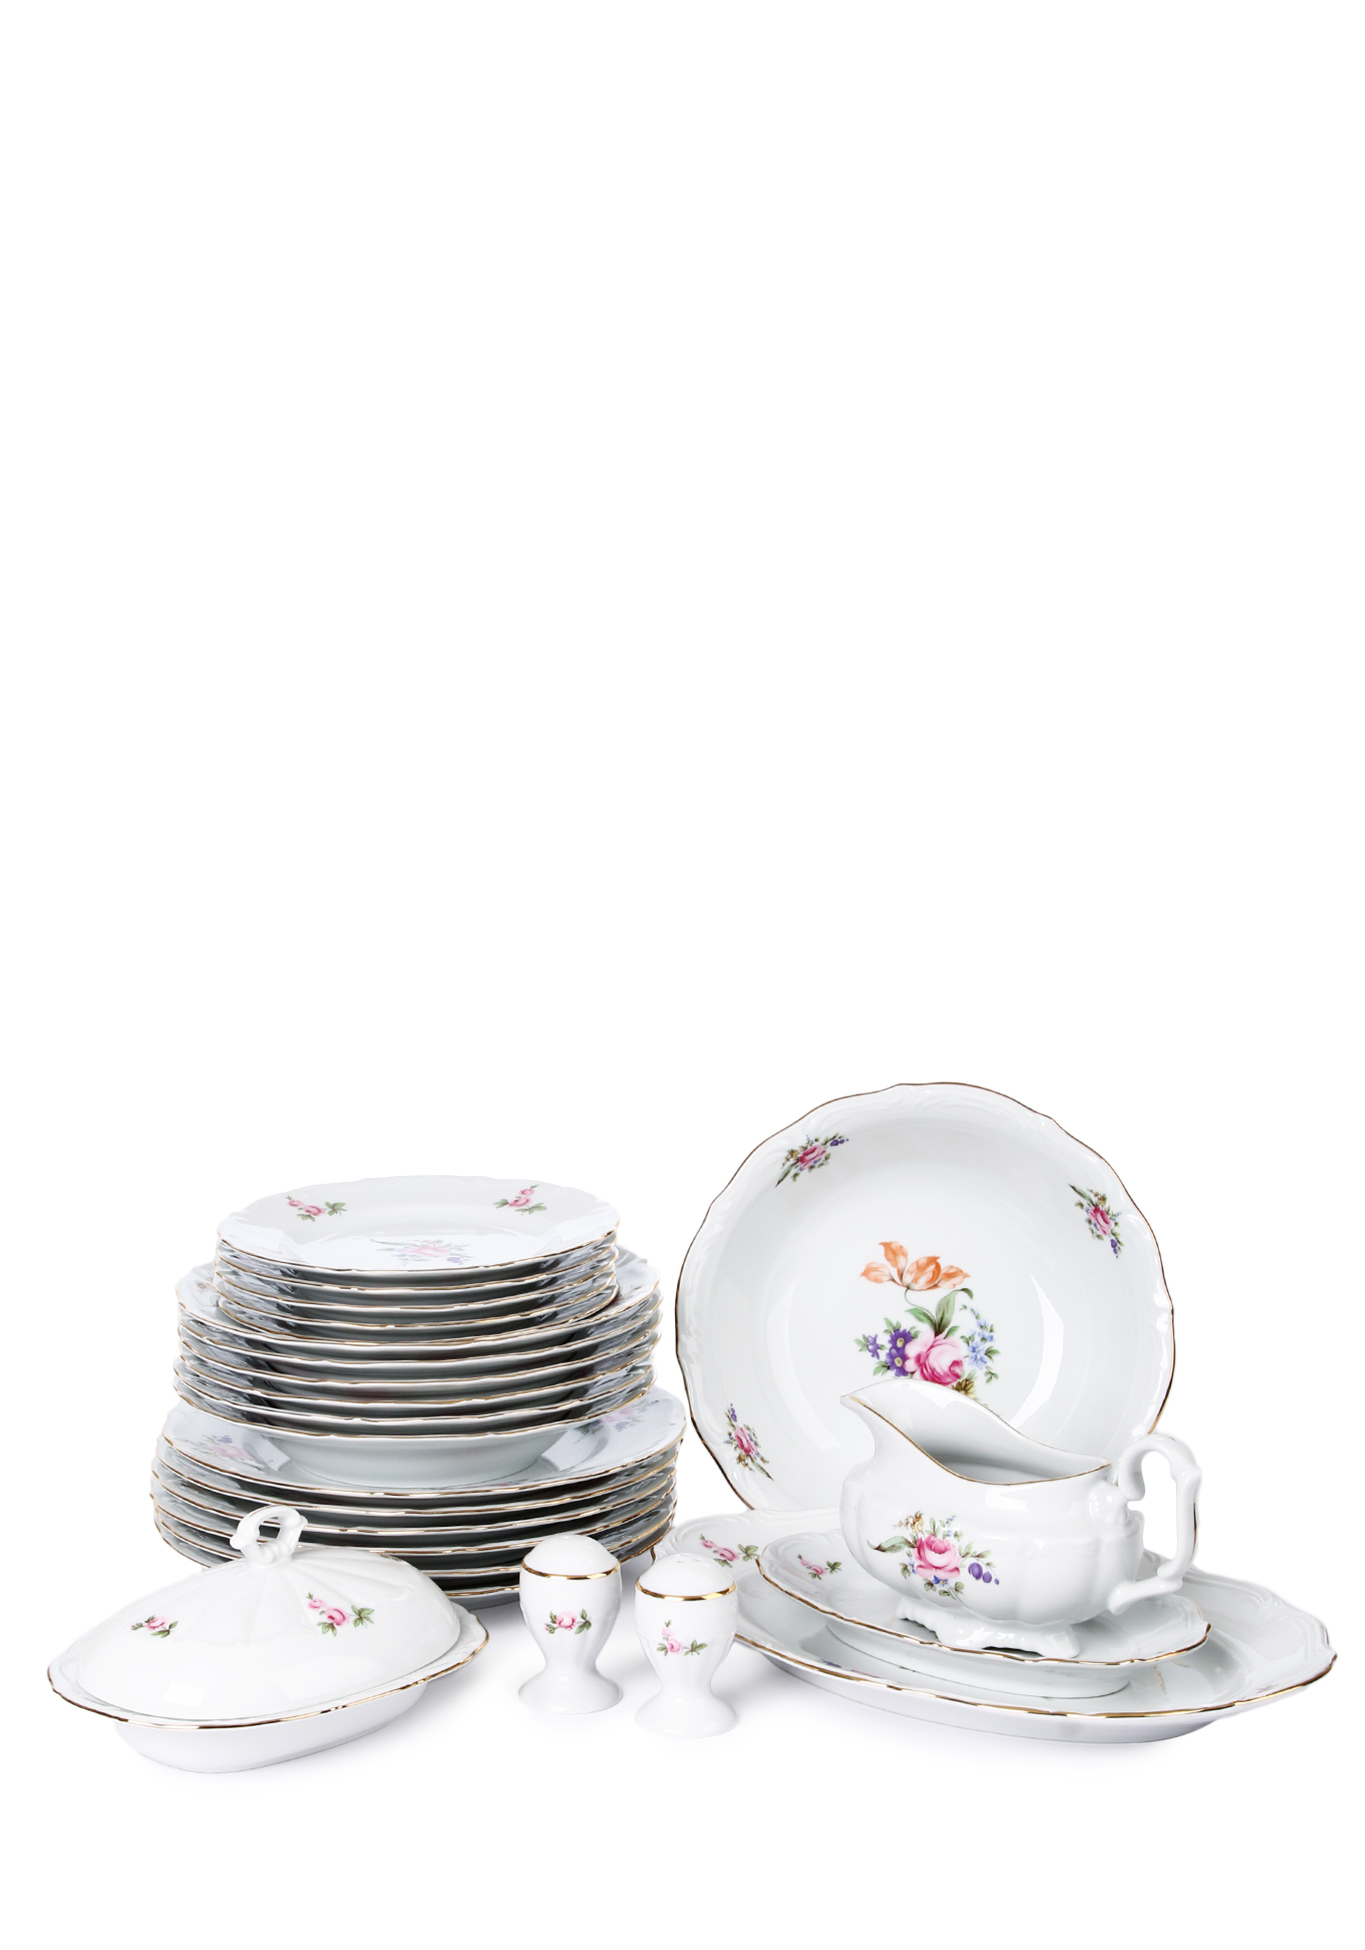 Столовый набор из чешского фарфора набор плоских тарелок из чешского фарфора